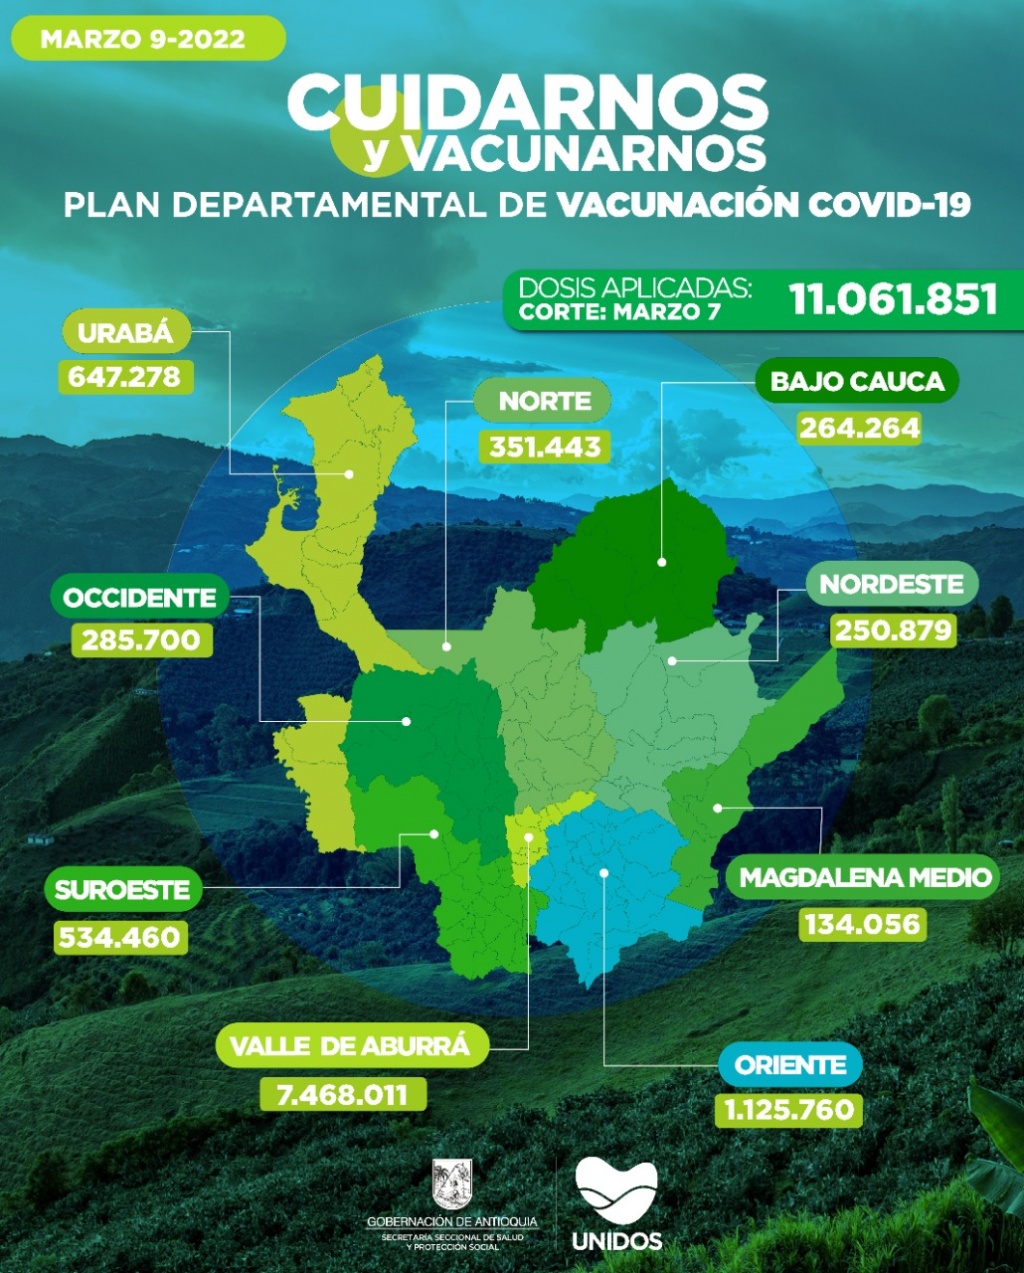 Con 18.050 dosis aplicadas, Antioquia llegó el 7 de marzo a 11.061.851 vacunados contra COVID19